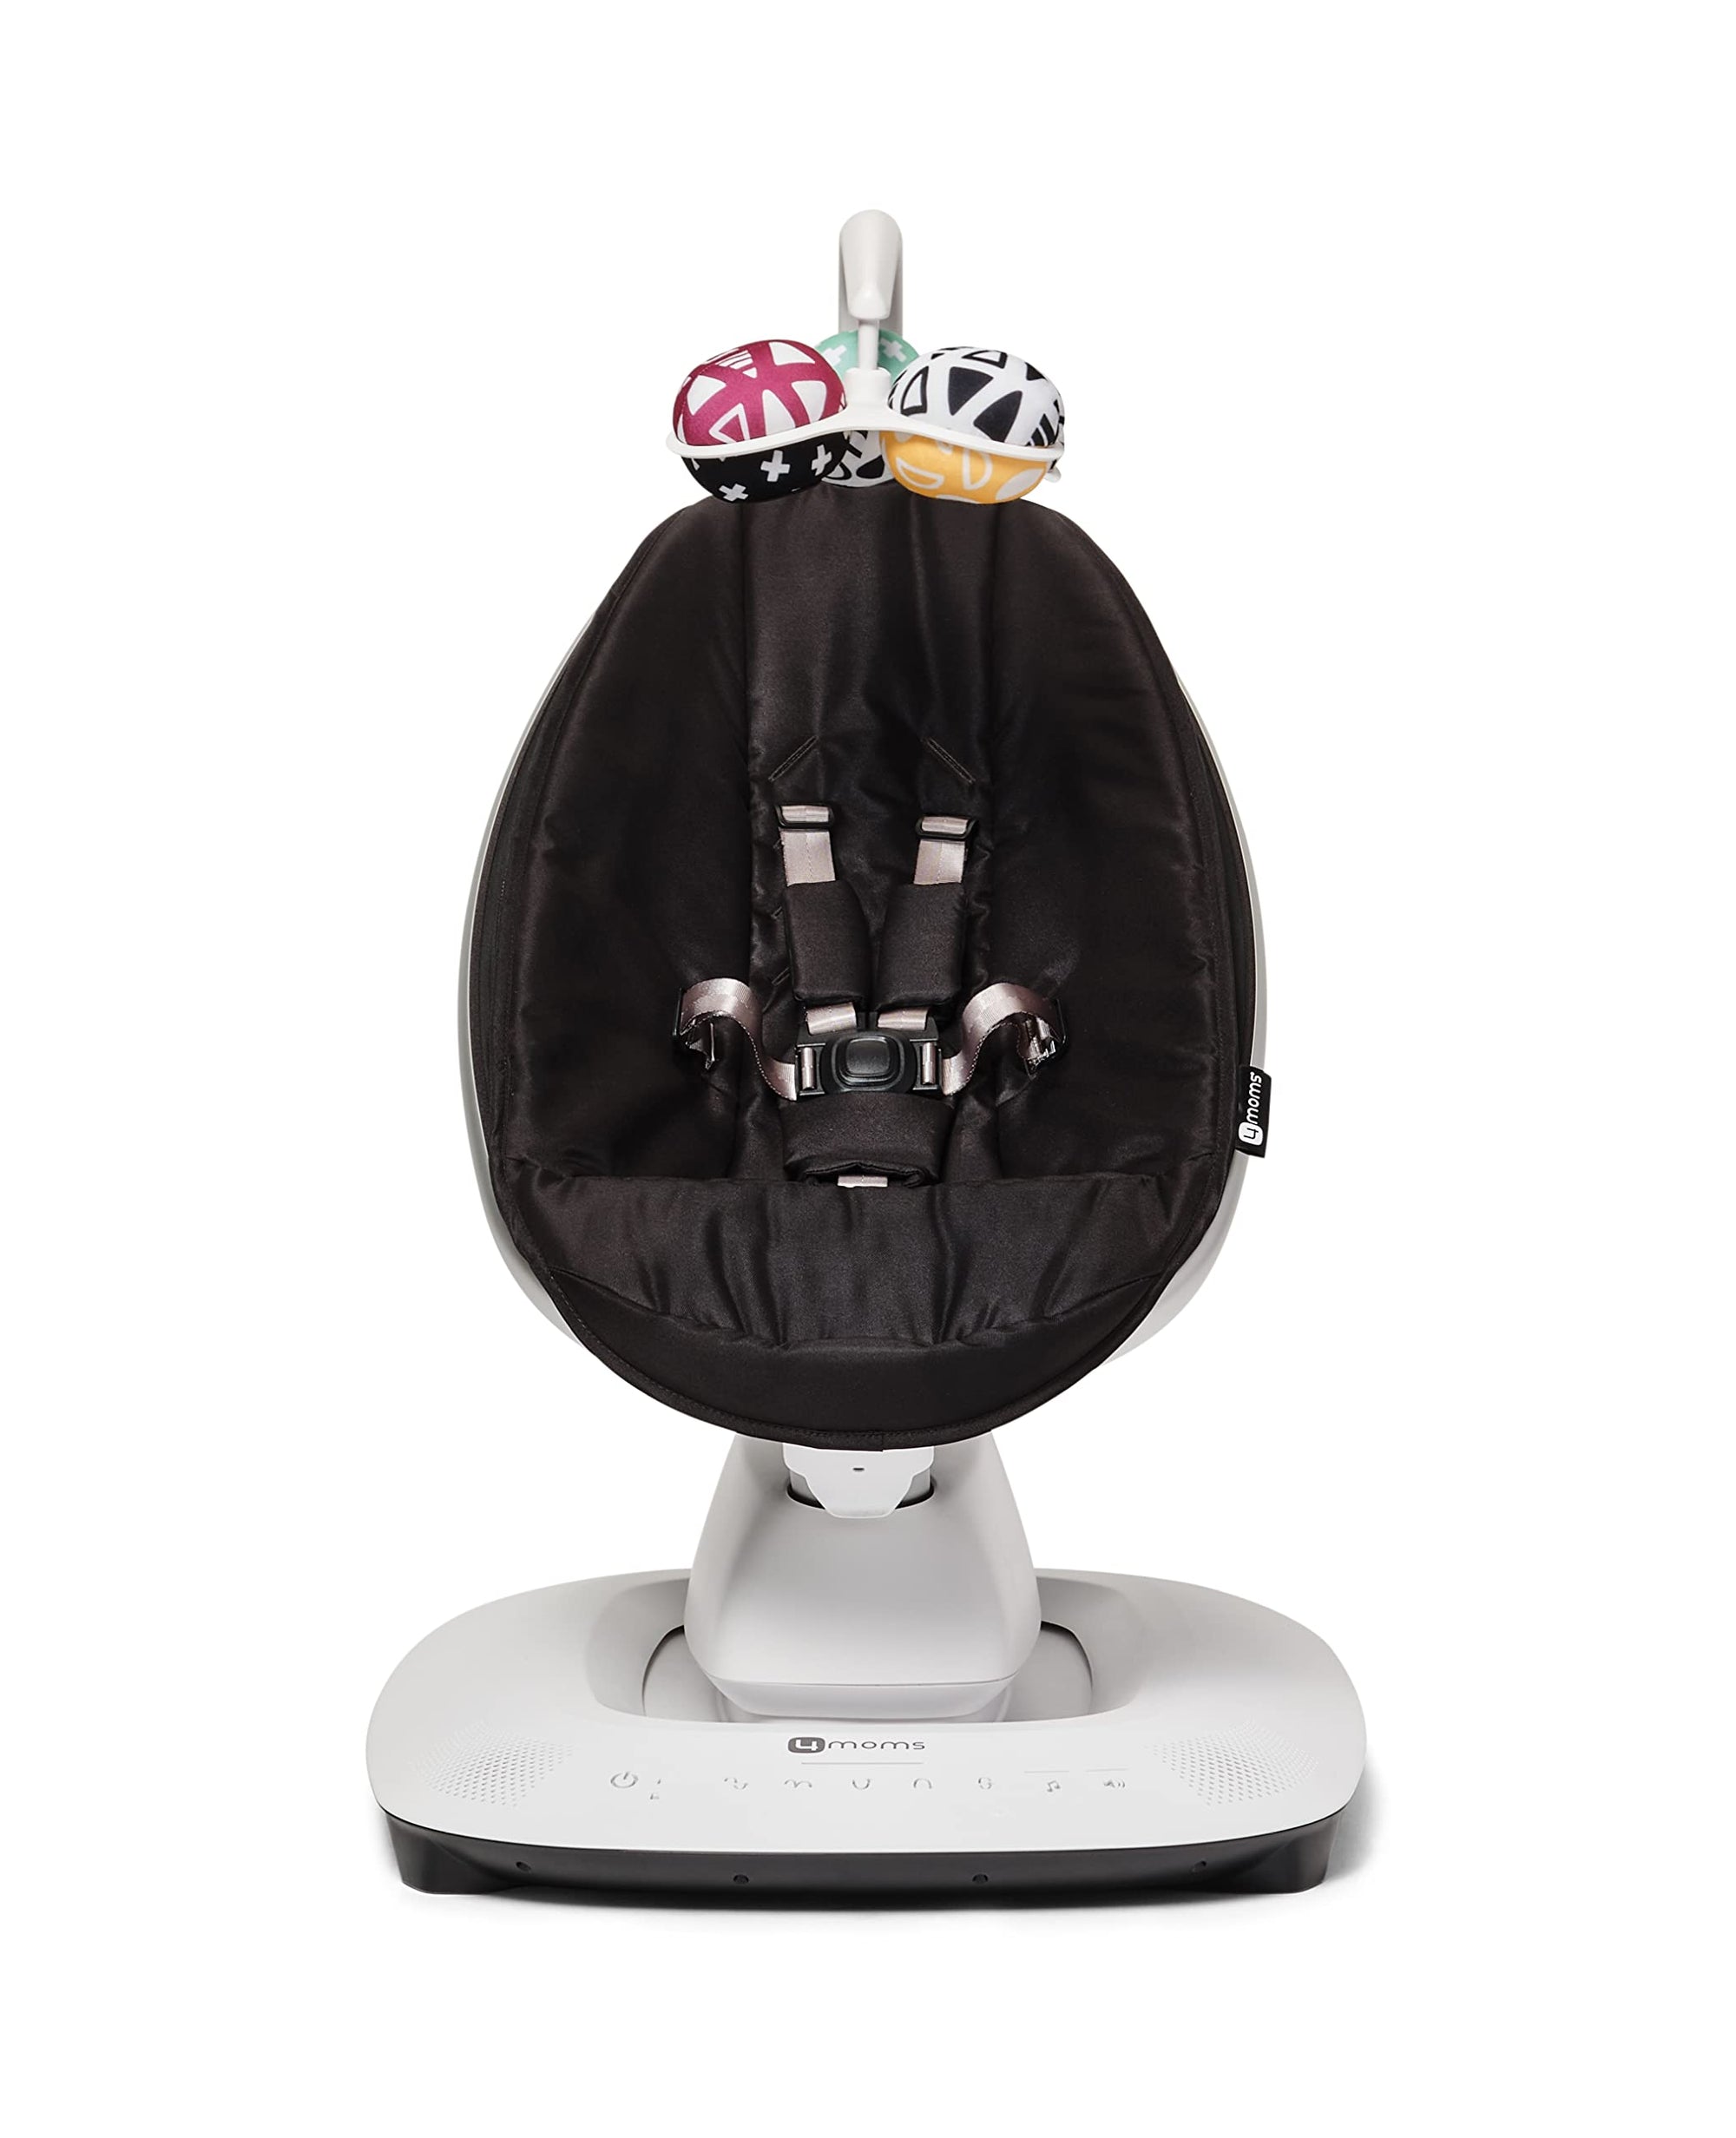 4moms MamaRoo - Columpio para bebé multimovimiento, Bluetooth habilitado con 5 movimientos únicos, color negro